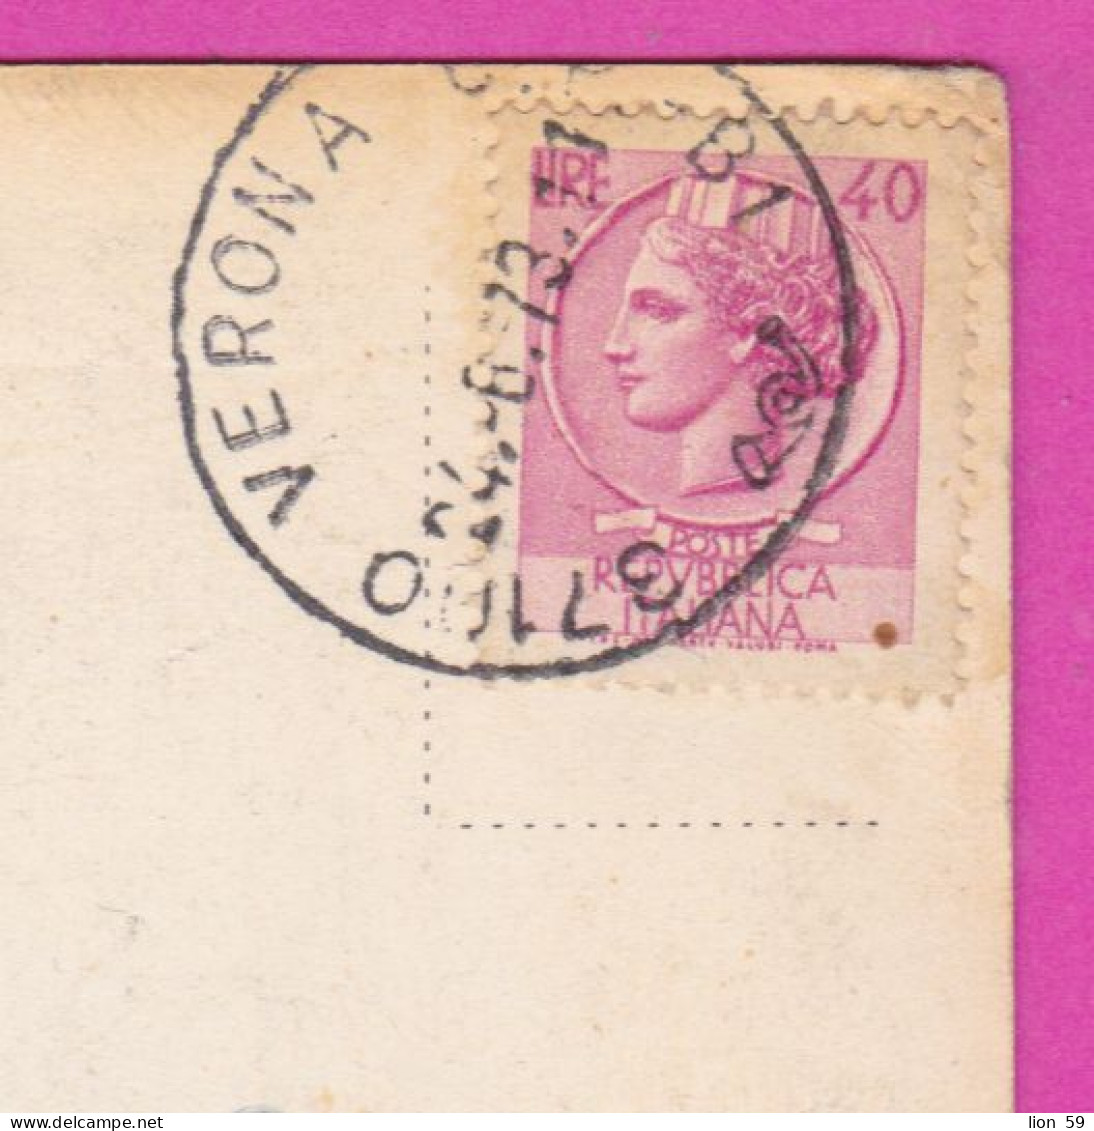 293952 / Italy - VERONA  - Arca Di Cansignorio PC 1973 USED - 40 L Coin Of Syracuse Italia Italie Italien - 1971-80: Poststempel